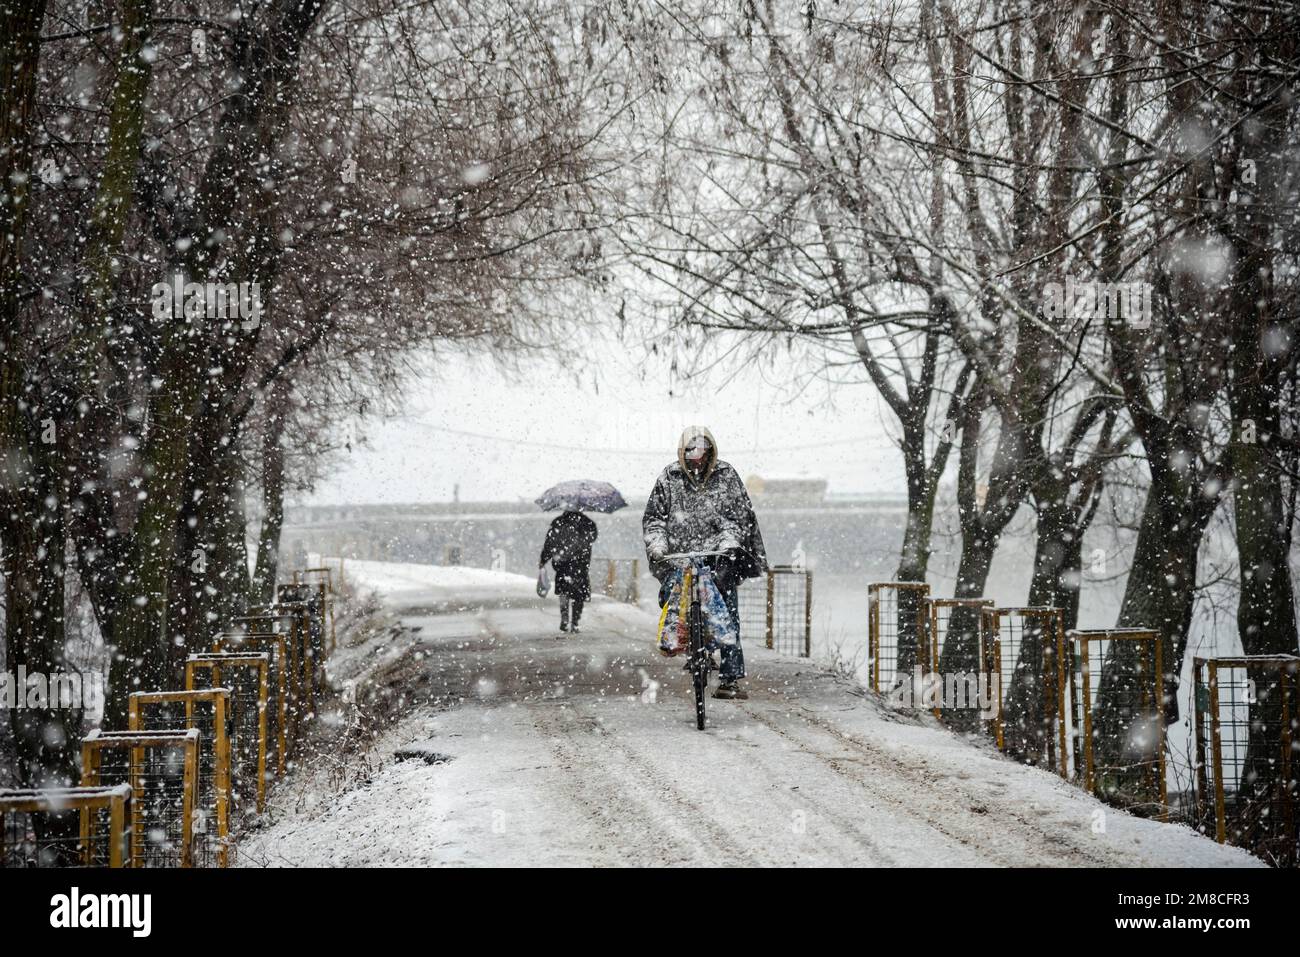 Un uomo passa in bicicletta davanti a un uomo che cammina lungo una strada coperta di neve durante le nevicate. Il Kashmir ha ricevuto nevicate fresche, con le cali più alte della valle che hanno ricevuto nevicate da moderate a pesanti e nevicate da leggere a moderate in pianura, causando una visibilità distruttiva. Questo ha influito sulle operazioni di volo insieme alla chiusura dell'autostrada nazionale Srinagar-Jammu. Foto Stock